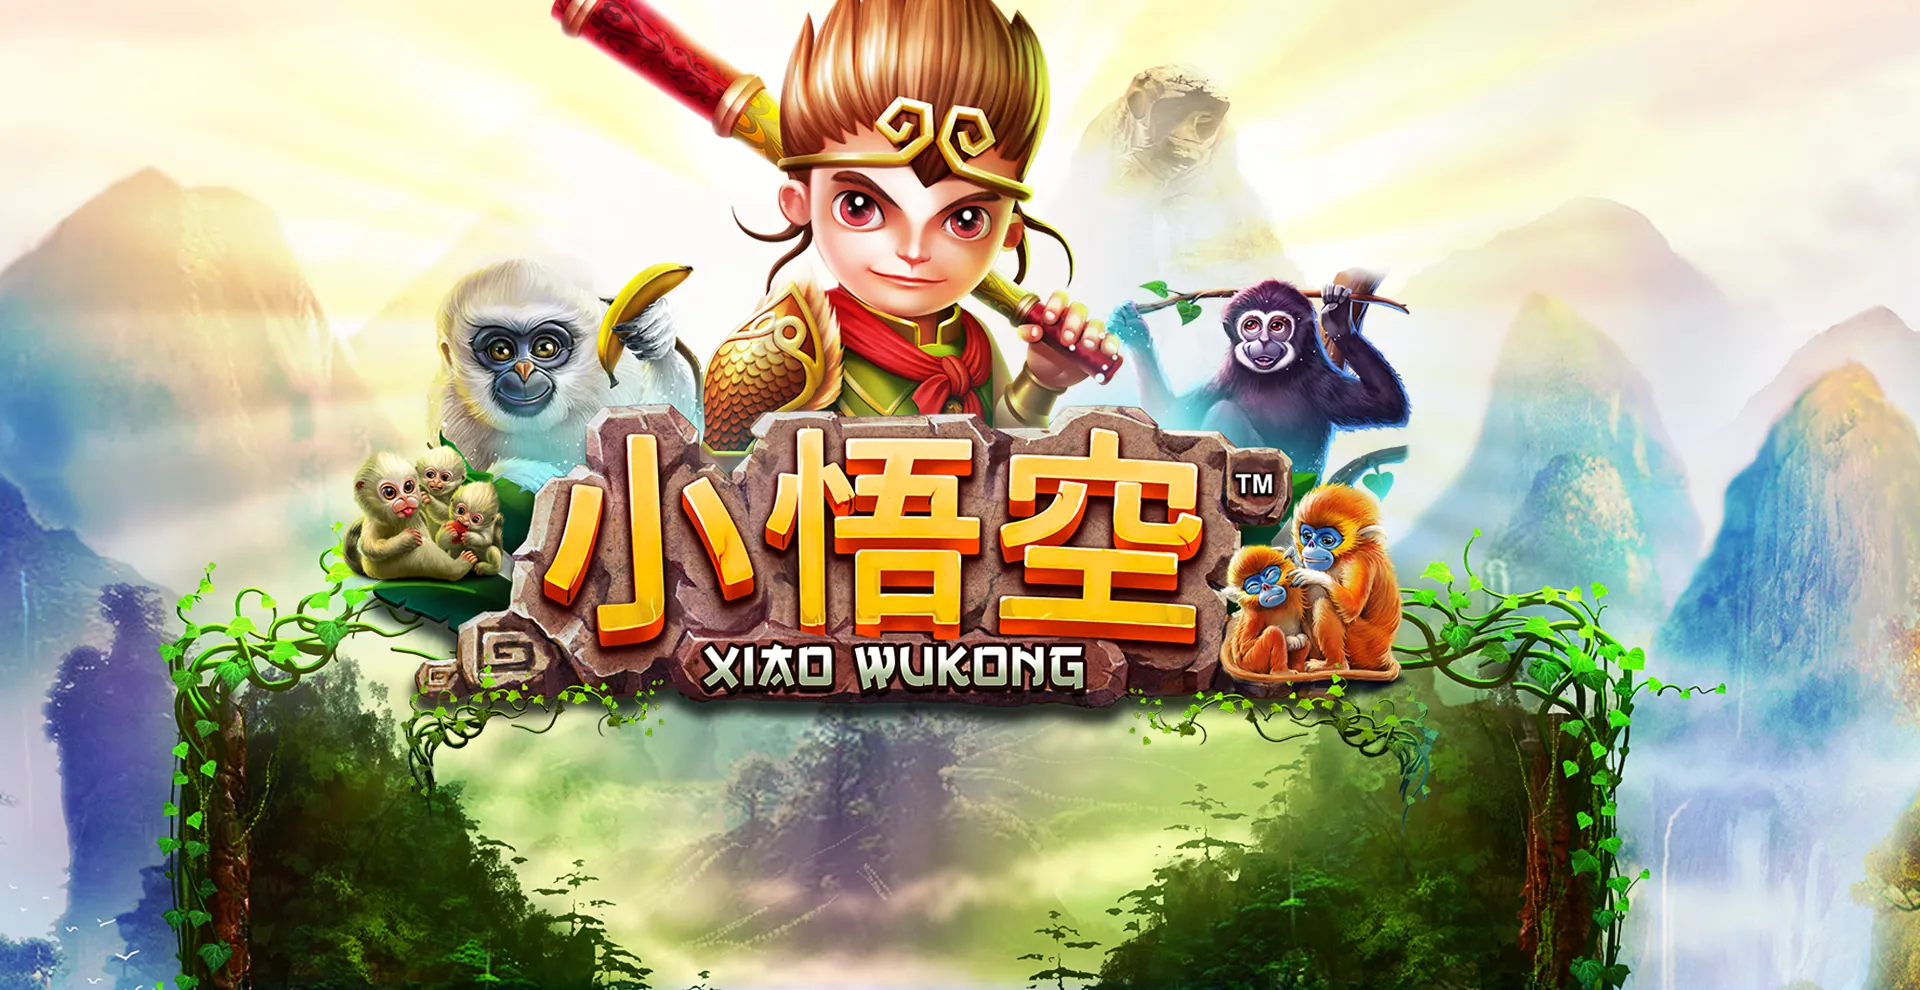 Xiao Wukong